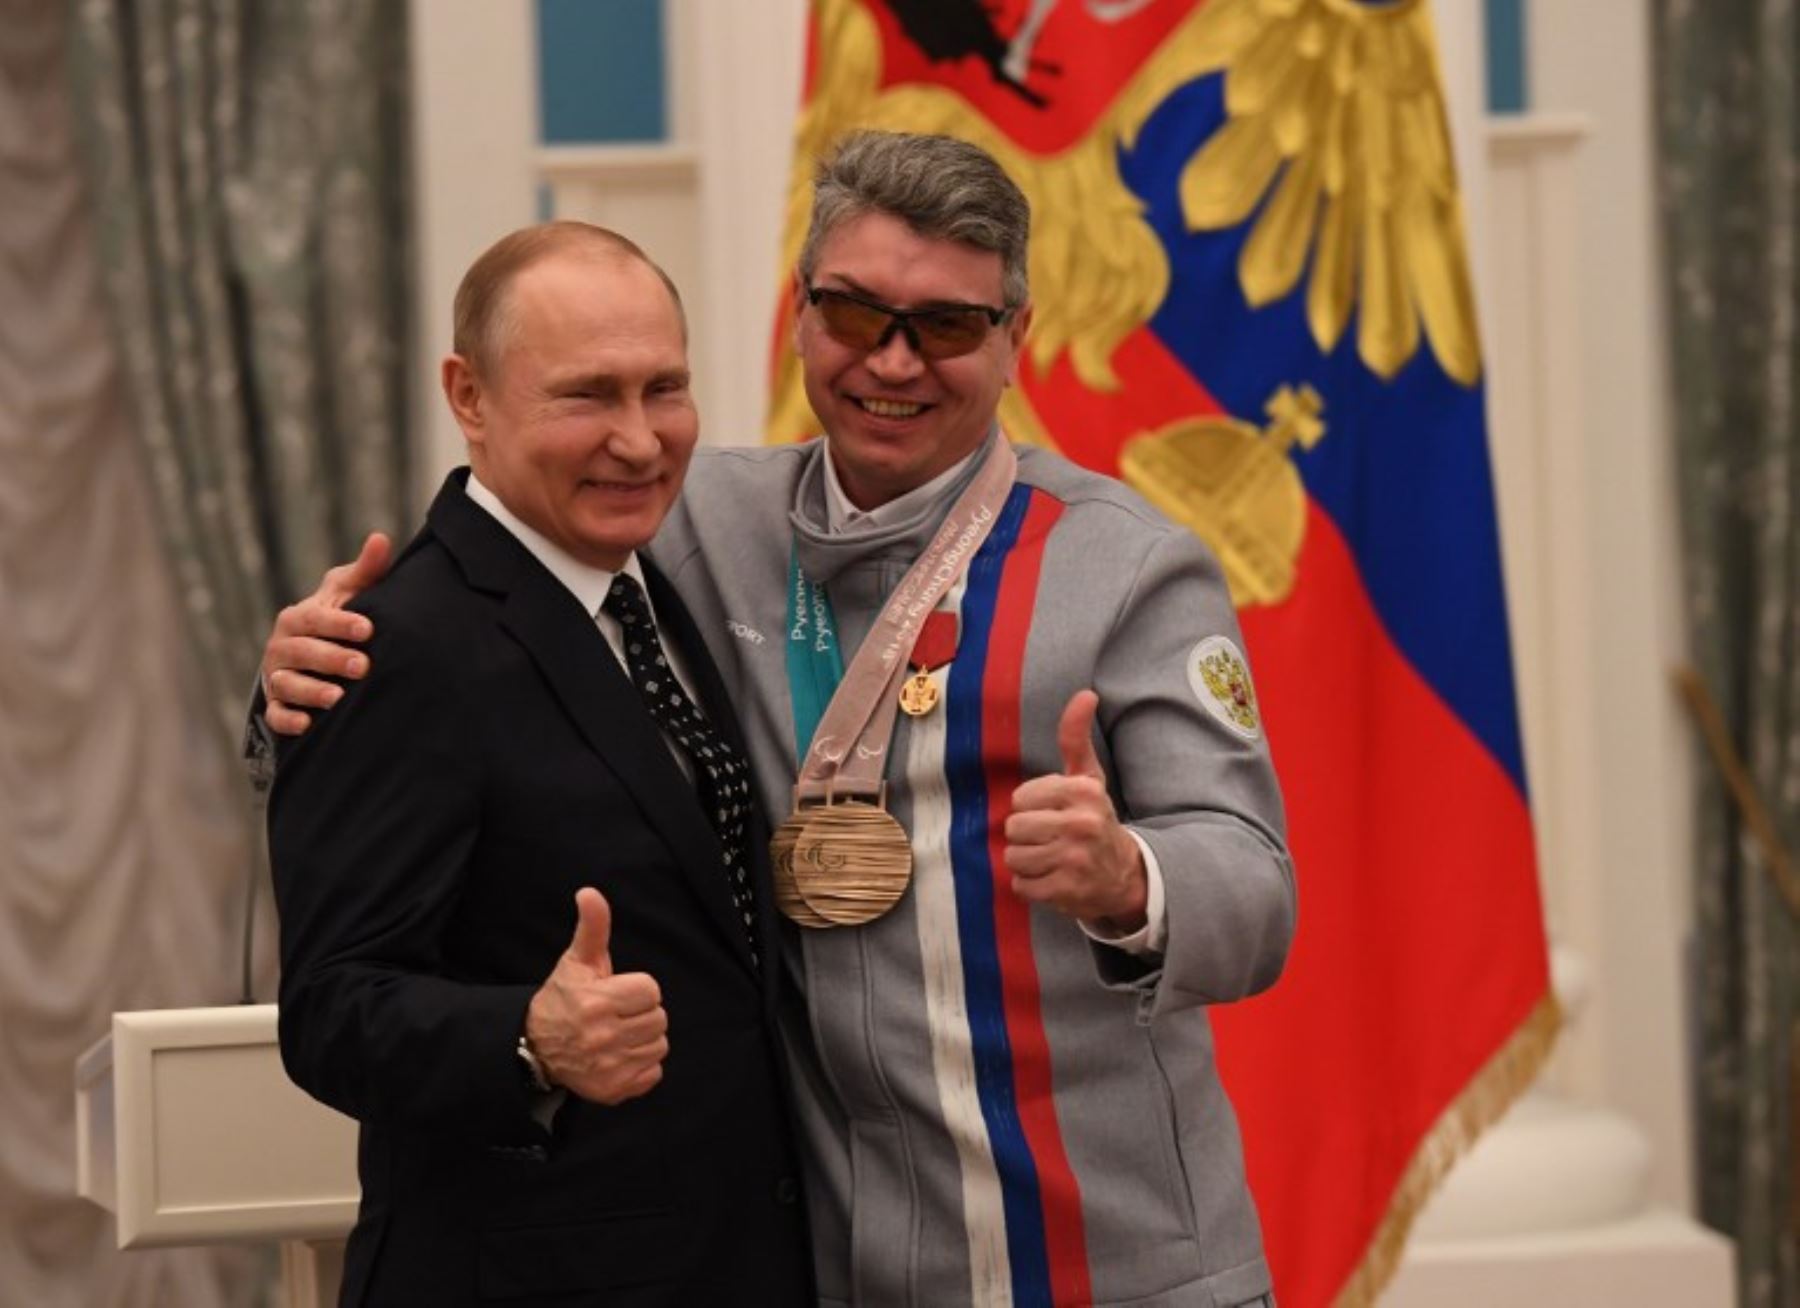 El presidente ruso Vladimir Putin, posa con Valery Redkozubov, ganador de la medalla en los Juegos Paralímpicos de Invierno Pyeongchang.Foto:AFP